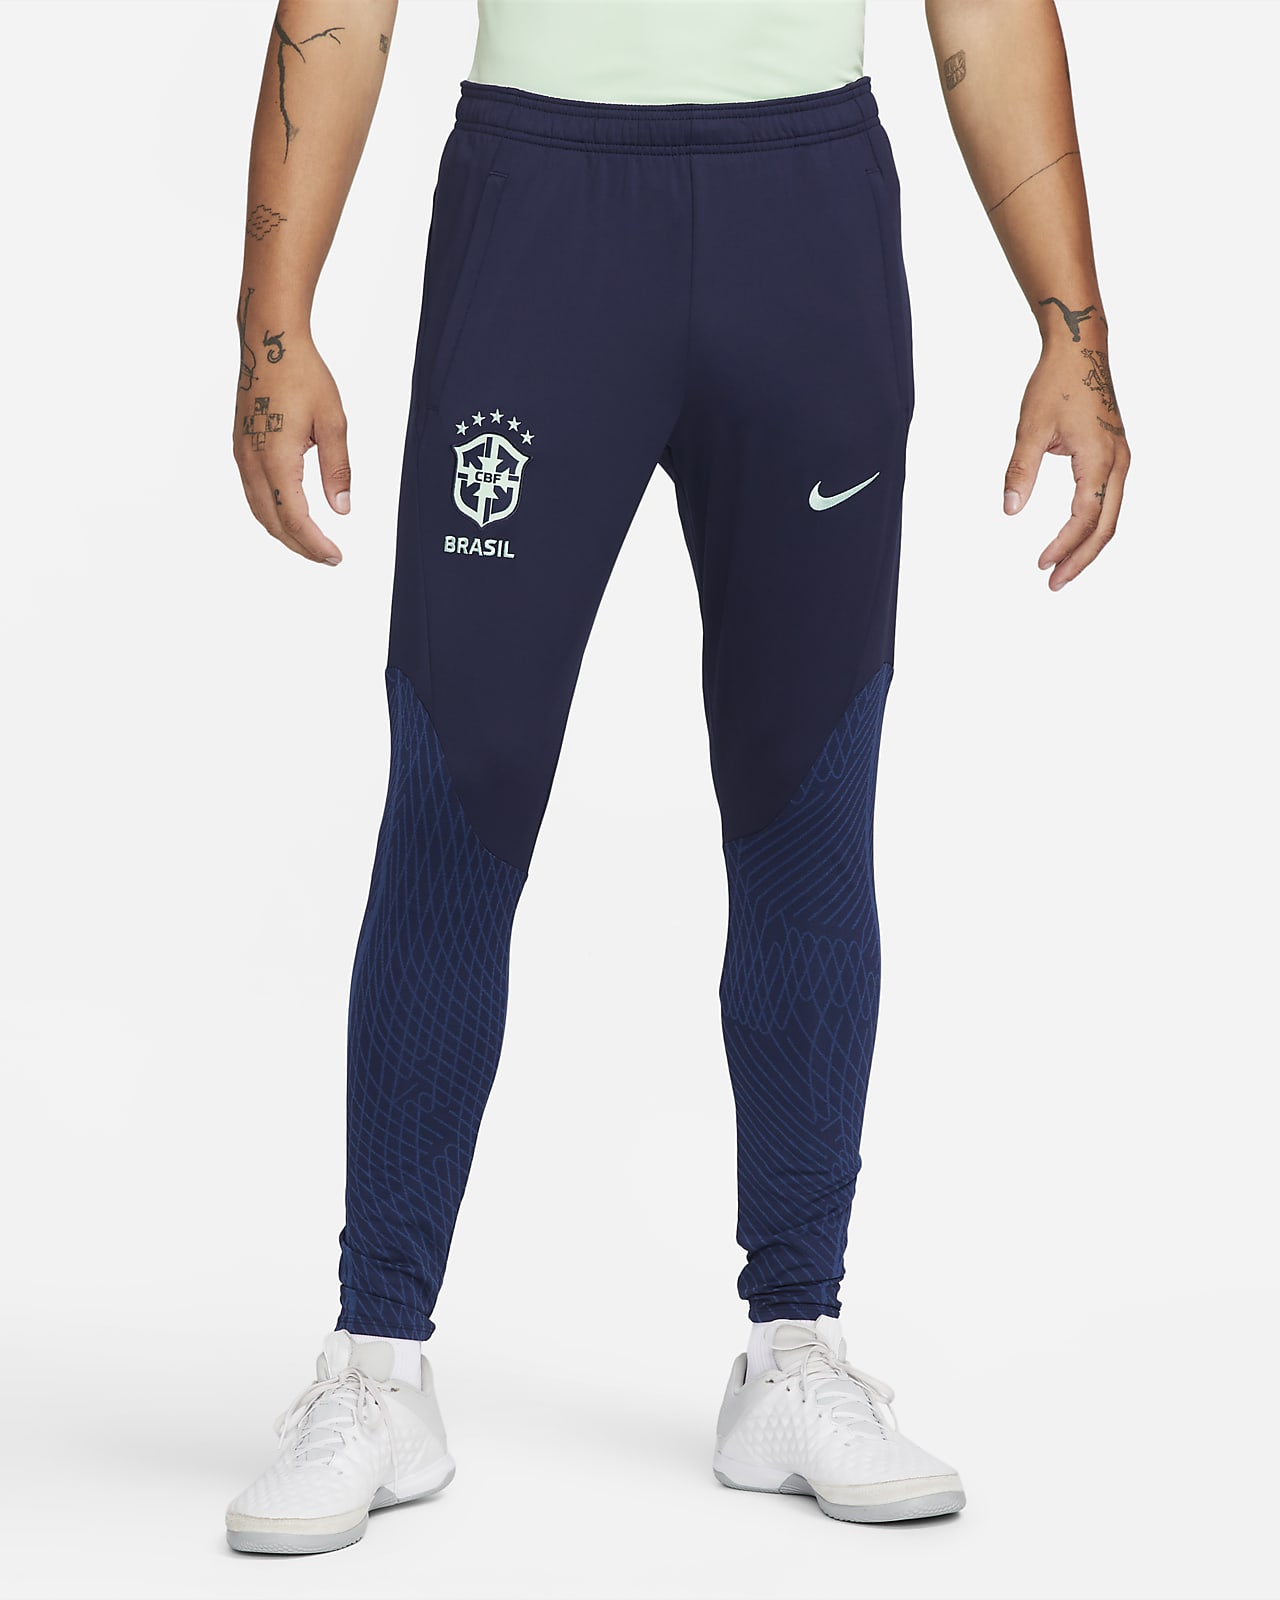 Brazil Strike Men's Nike Dri-FIT Knit Football Pants